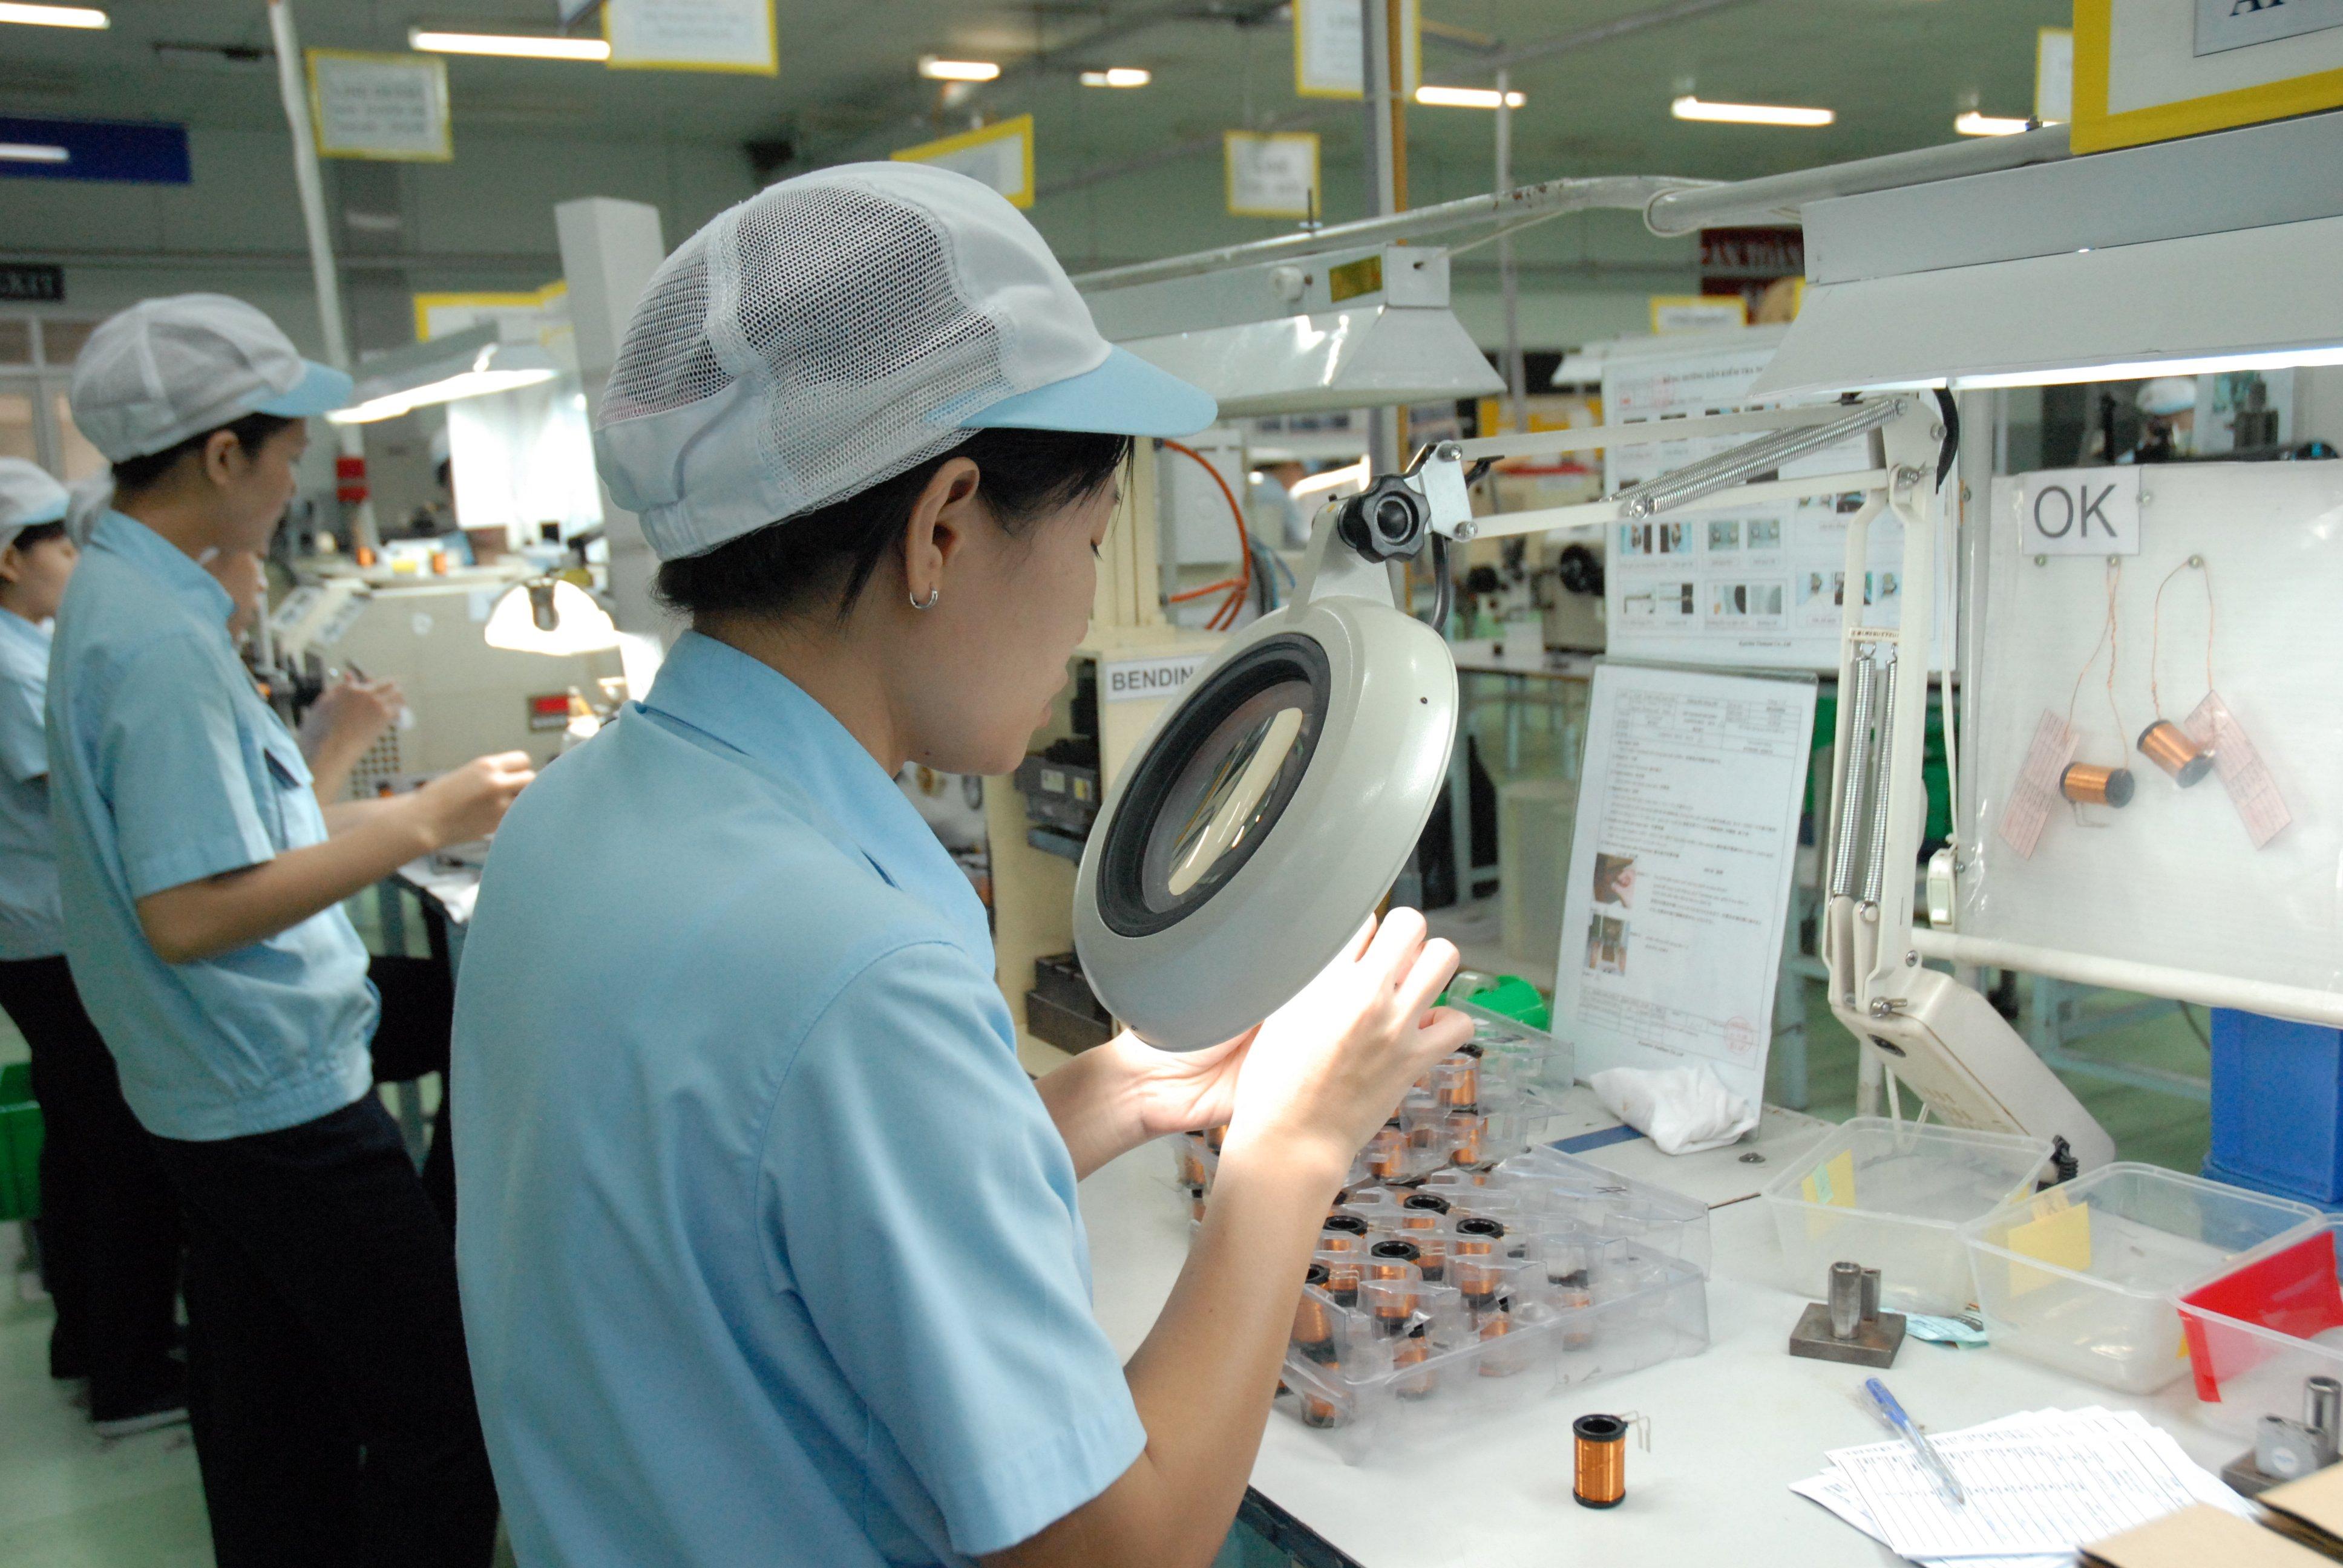 Công nhân sản xuất các chi tiết cơ khí tại Công ty TNHH Nidec Tosok Việt Nam trong Khu chế xuất Tân Thuận (TP.HCM).